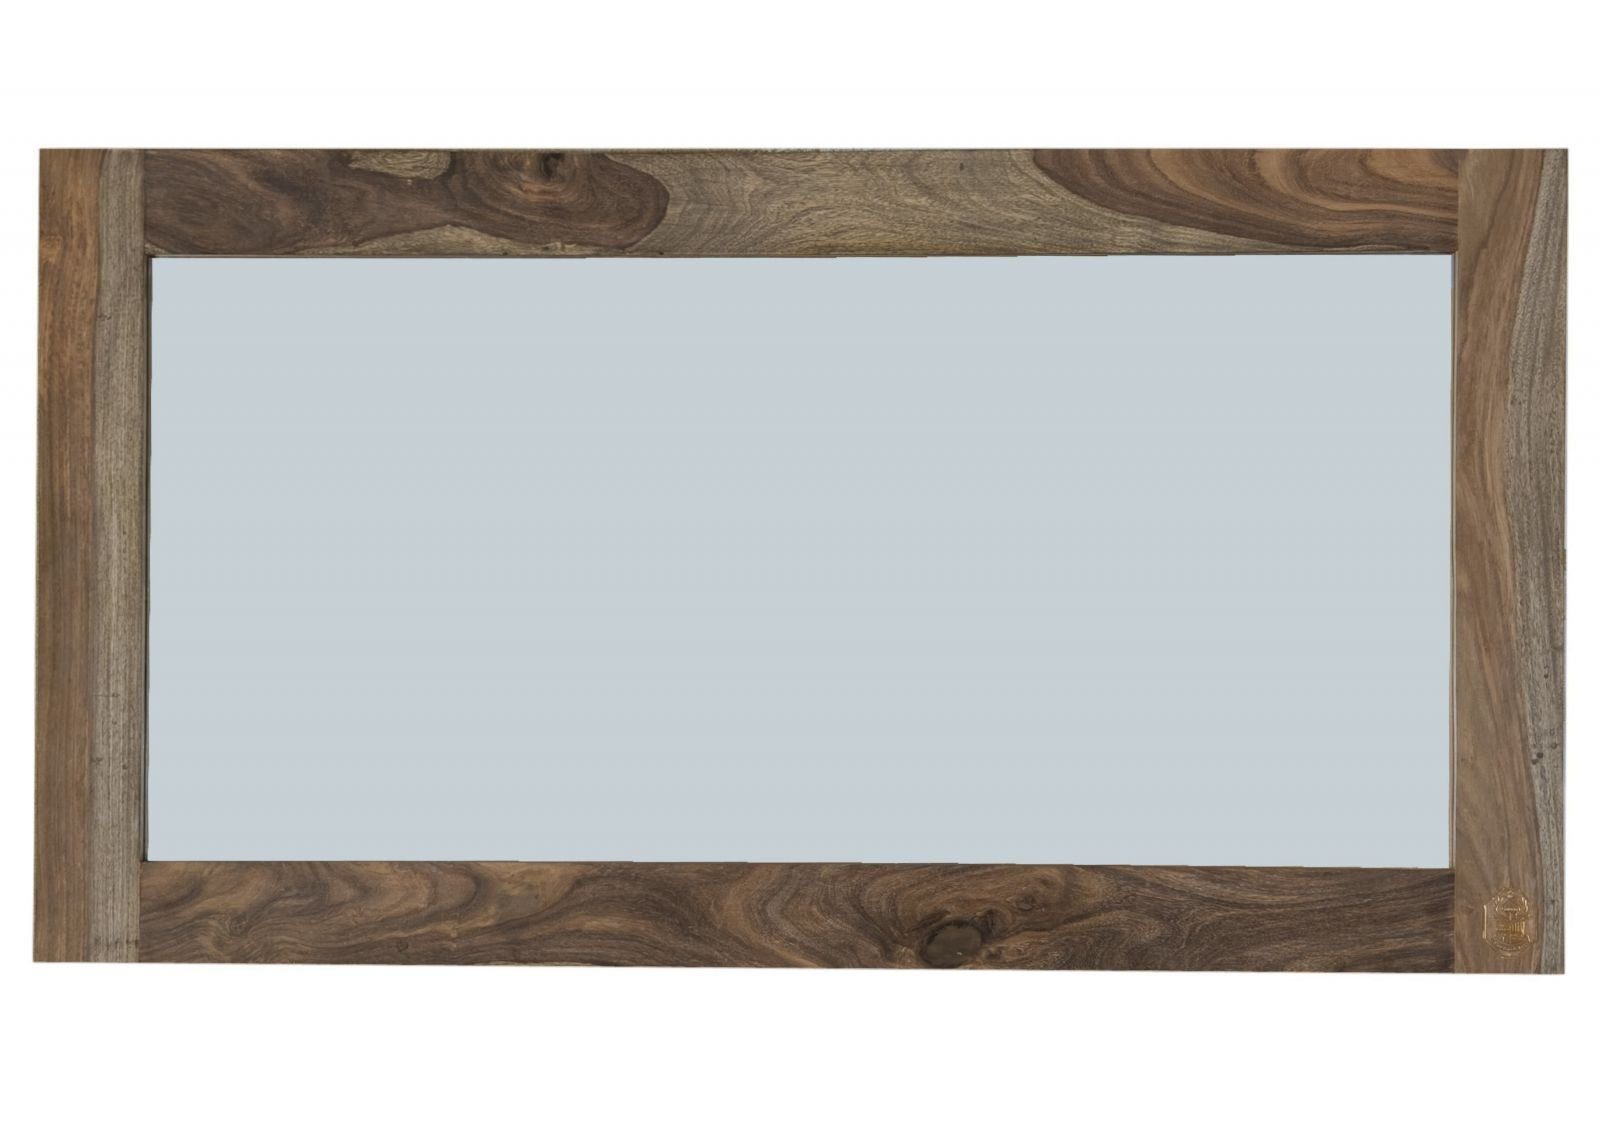 Massivmoebel24 Spiegel NATURE GREY (Moderner horizontal vertikal geölt 130x3x70 Design, Sheesham geradliniges und montiert) Spiegel, grau anbringbar, Massivholz